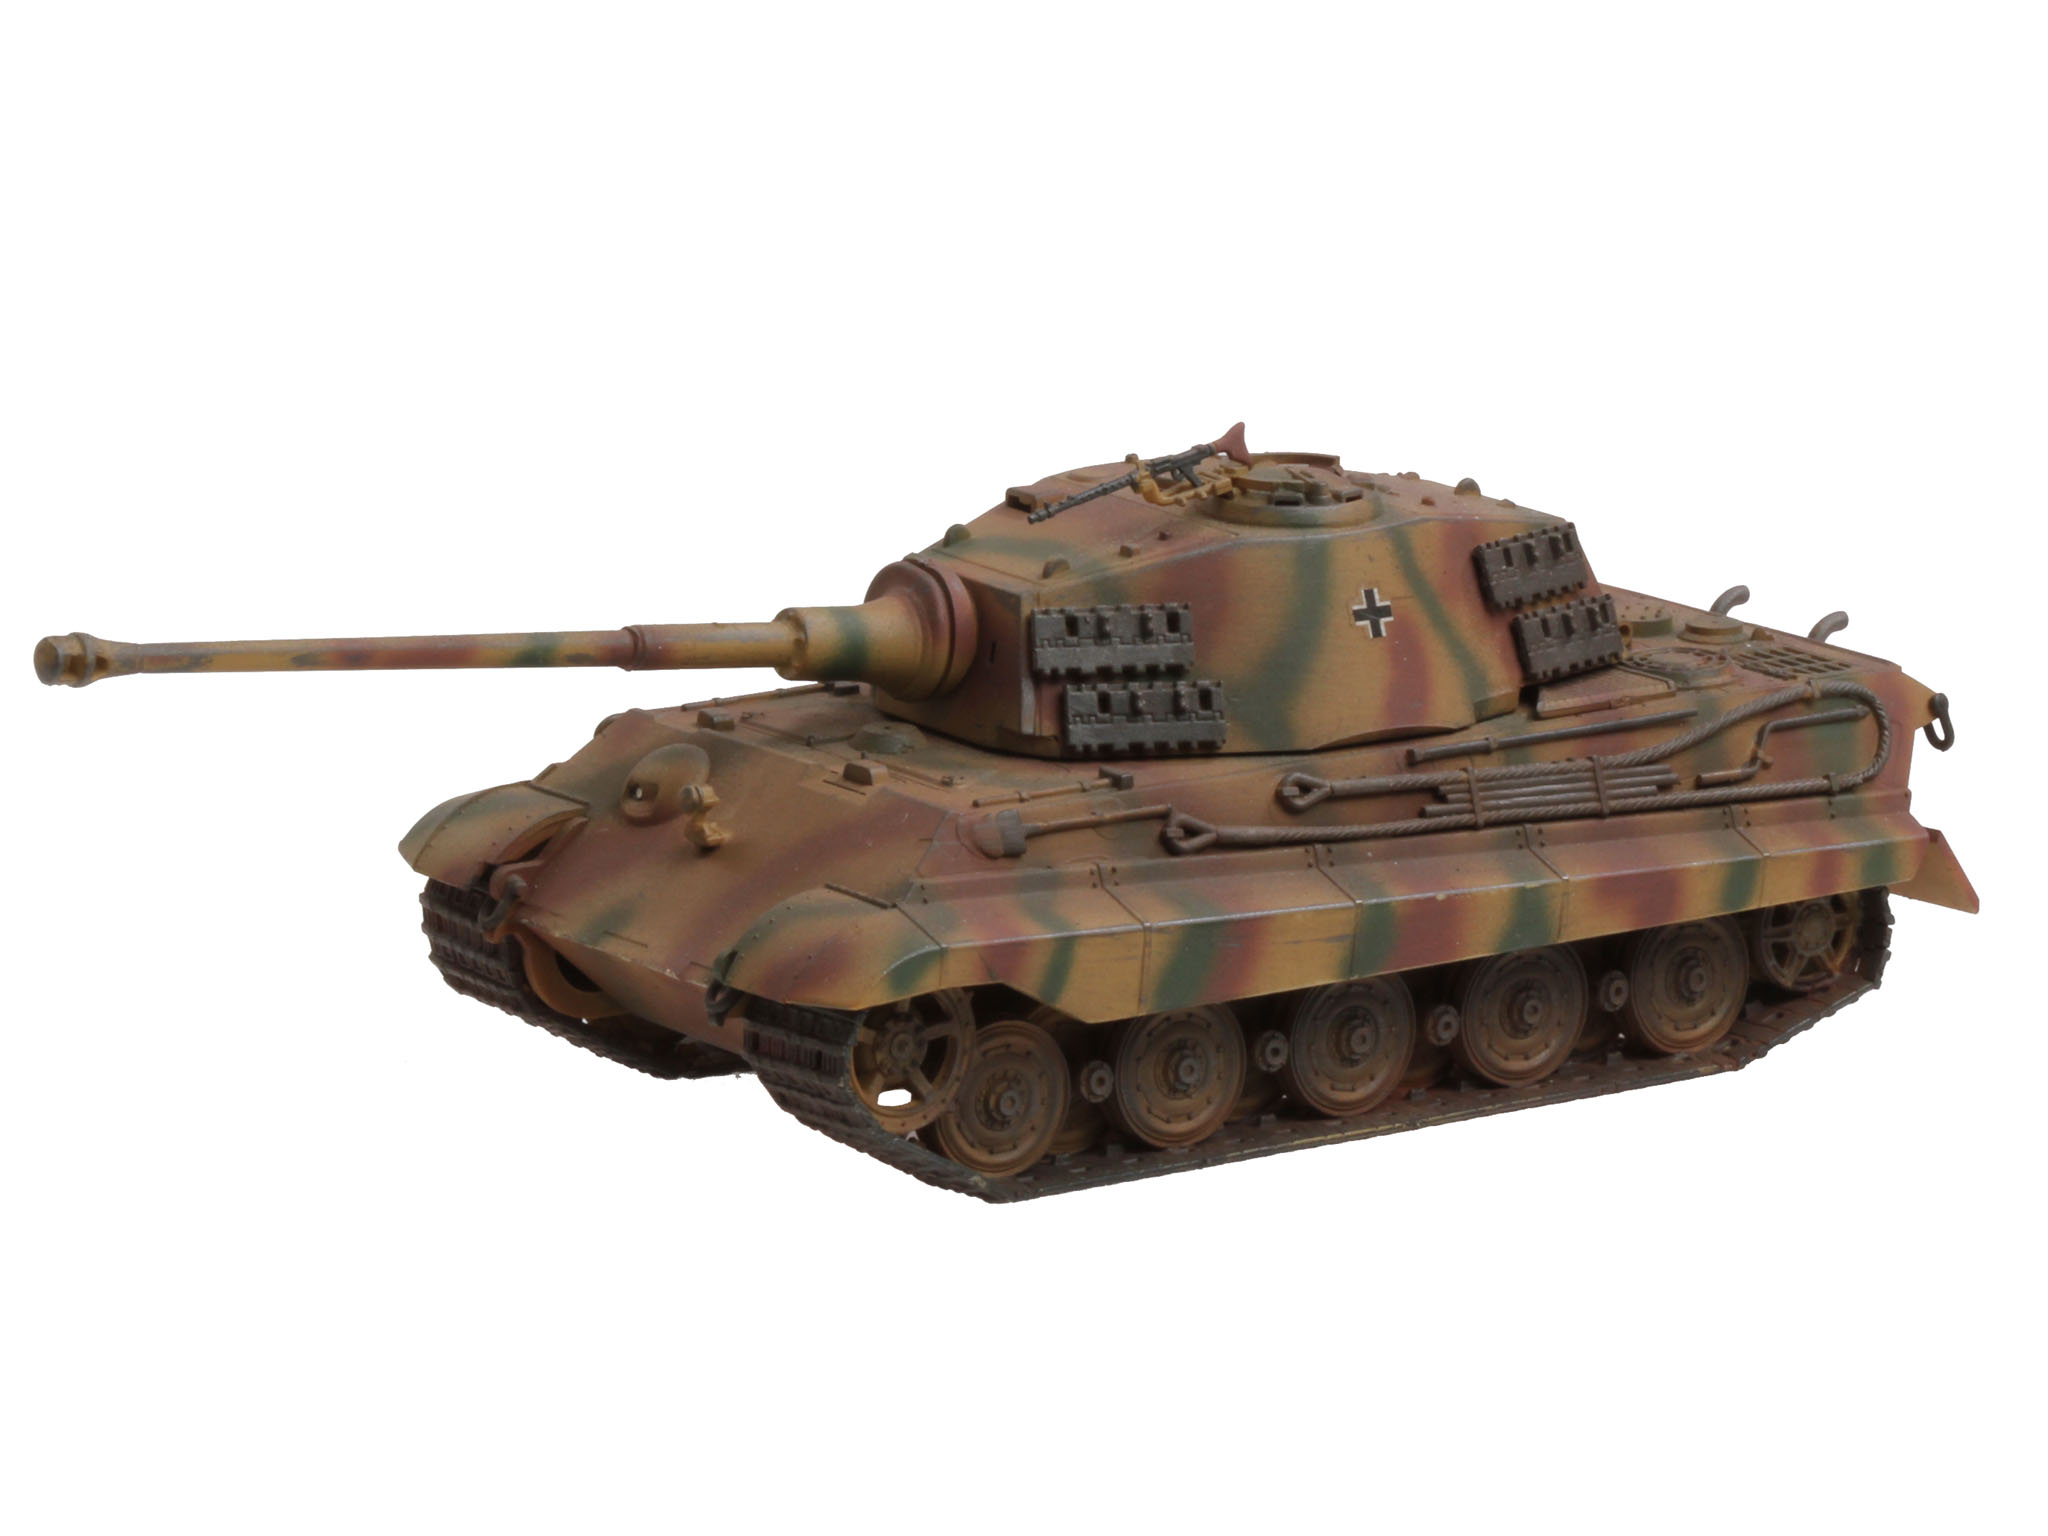 PzKpfw VI Königstige - Revell 1:72 Tiger II Ausf. B